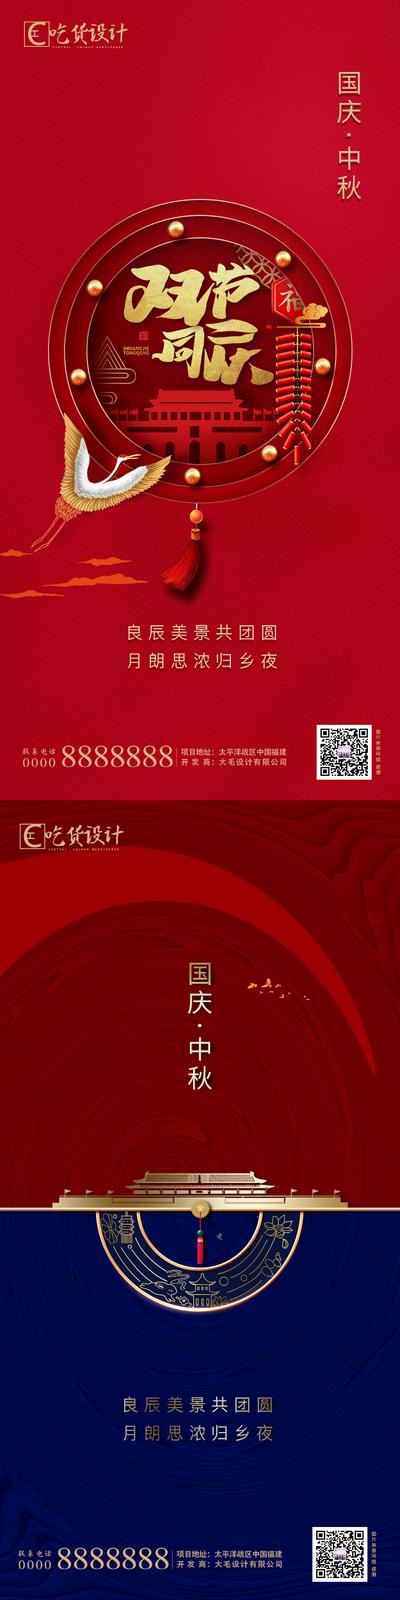 南门网 海报 中国传统节日 中秋节 公历节日 国庆节 红金